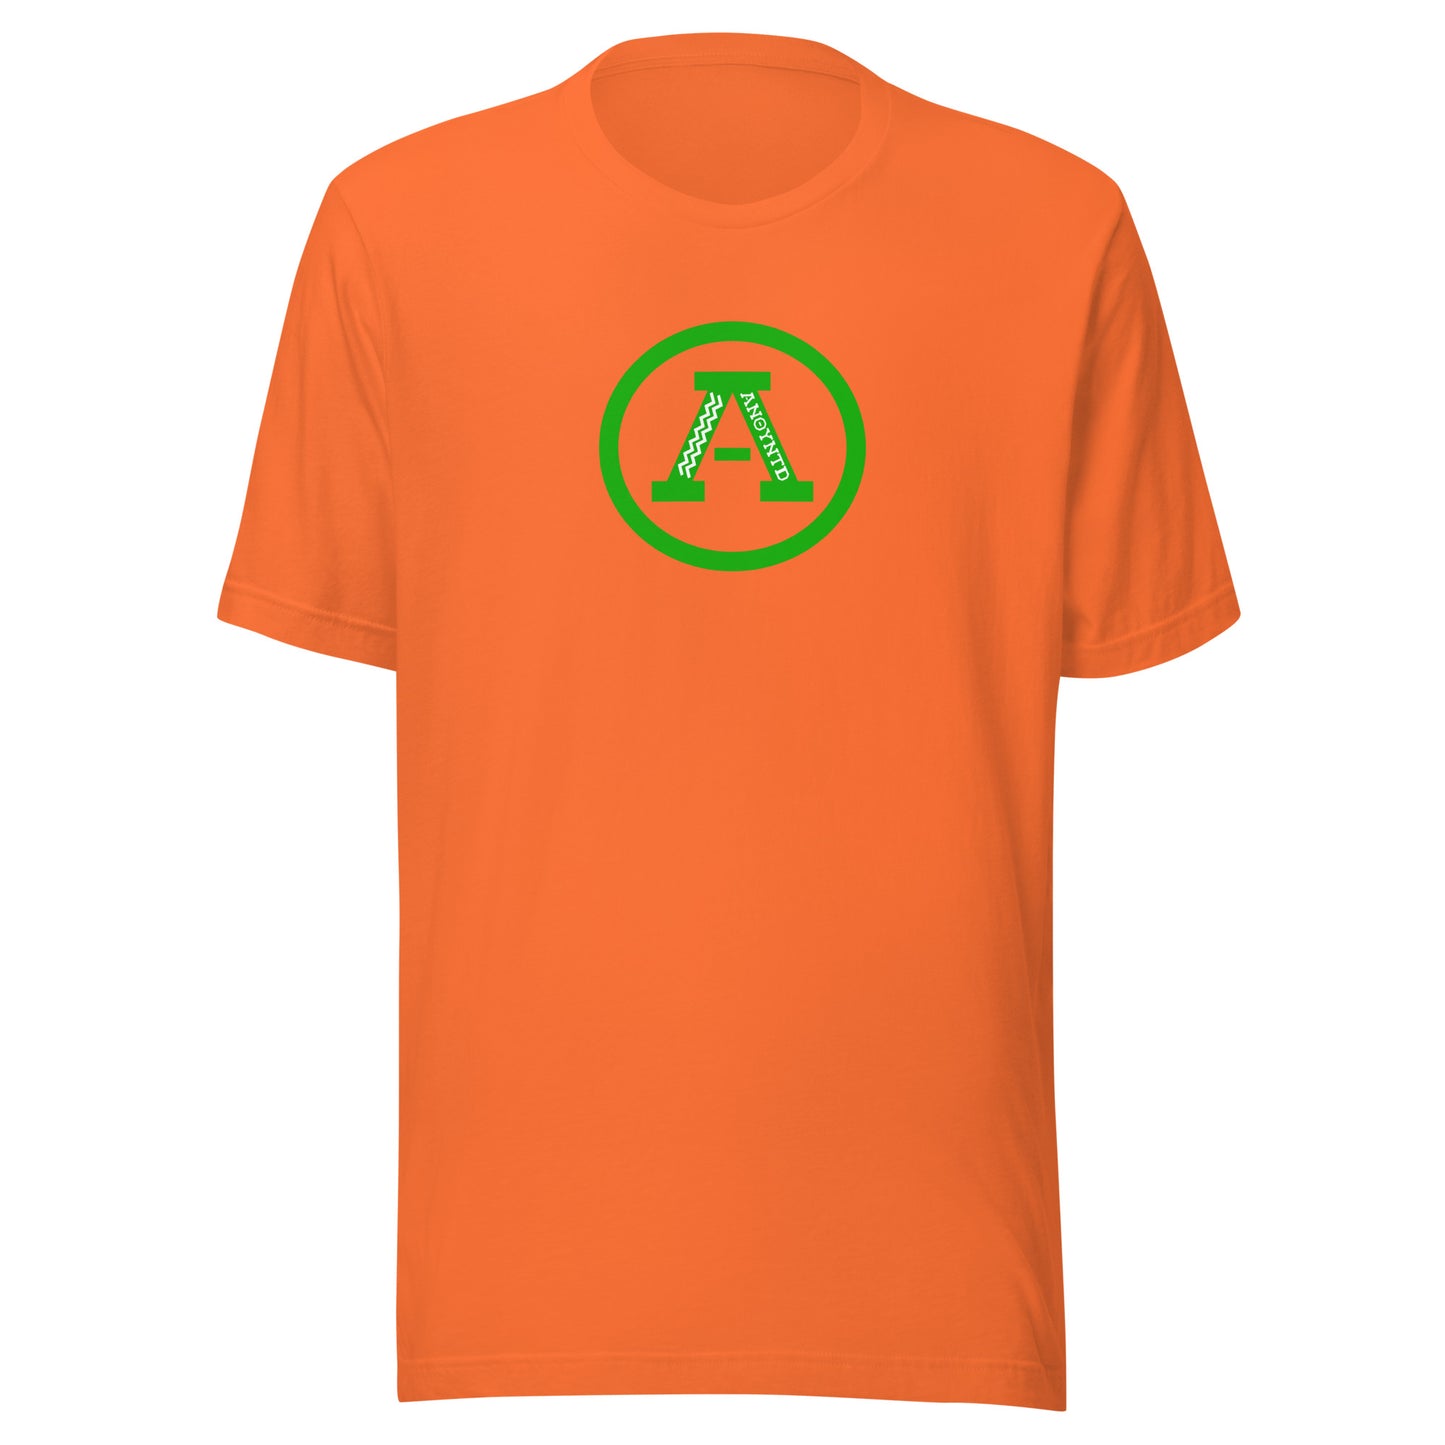 ANOYNTD Letterman (Gr) Unisex t-shirt